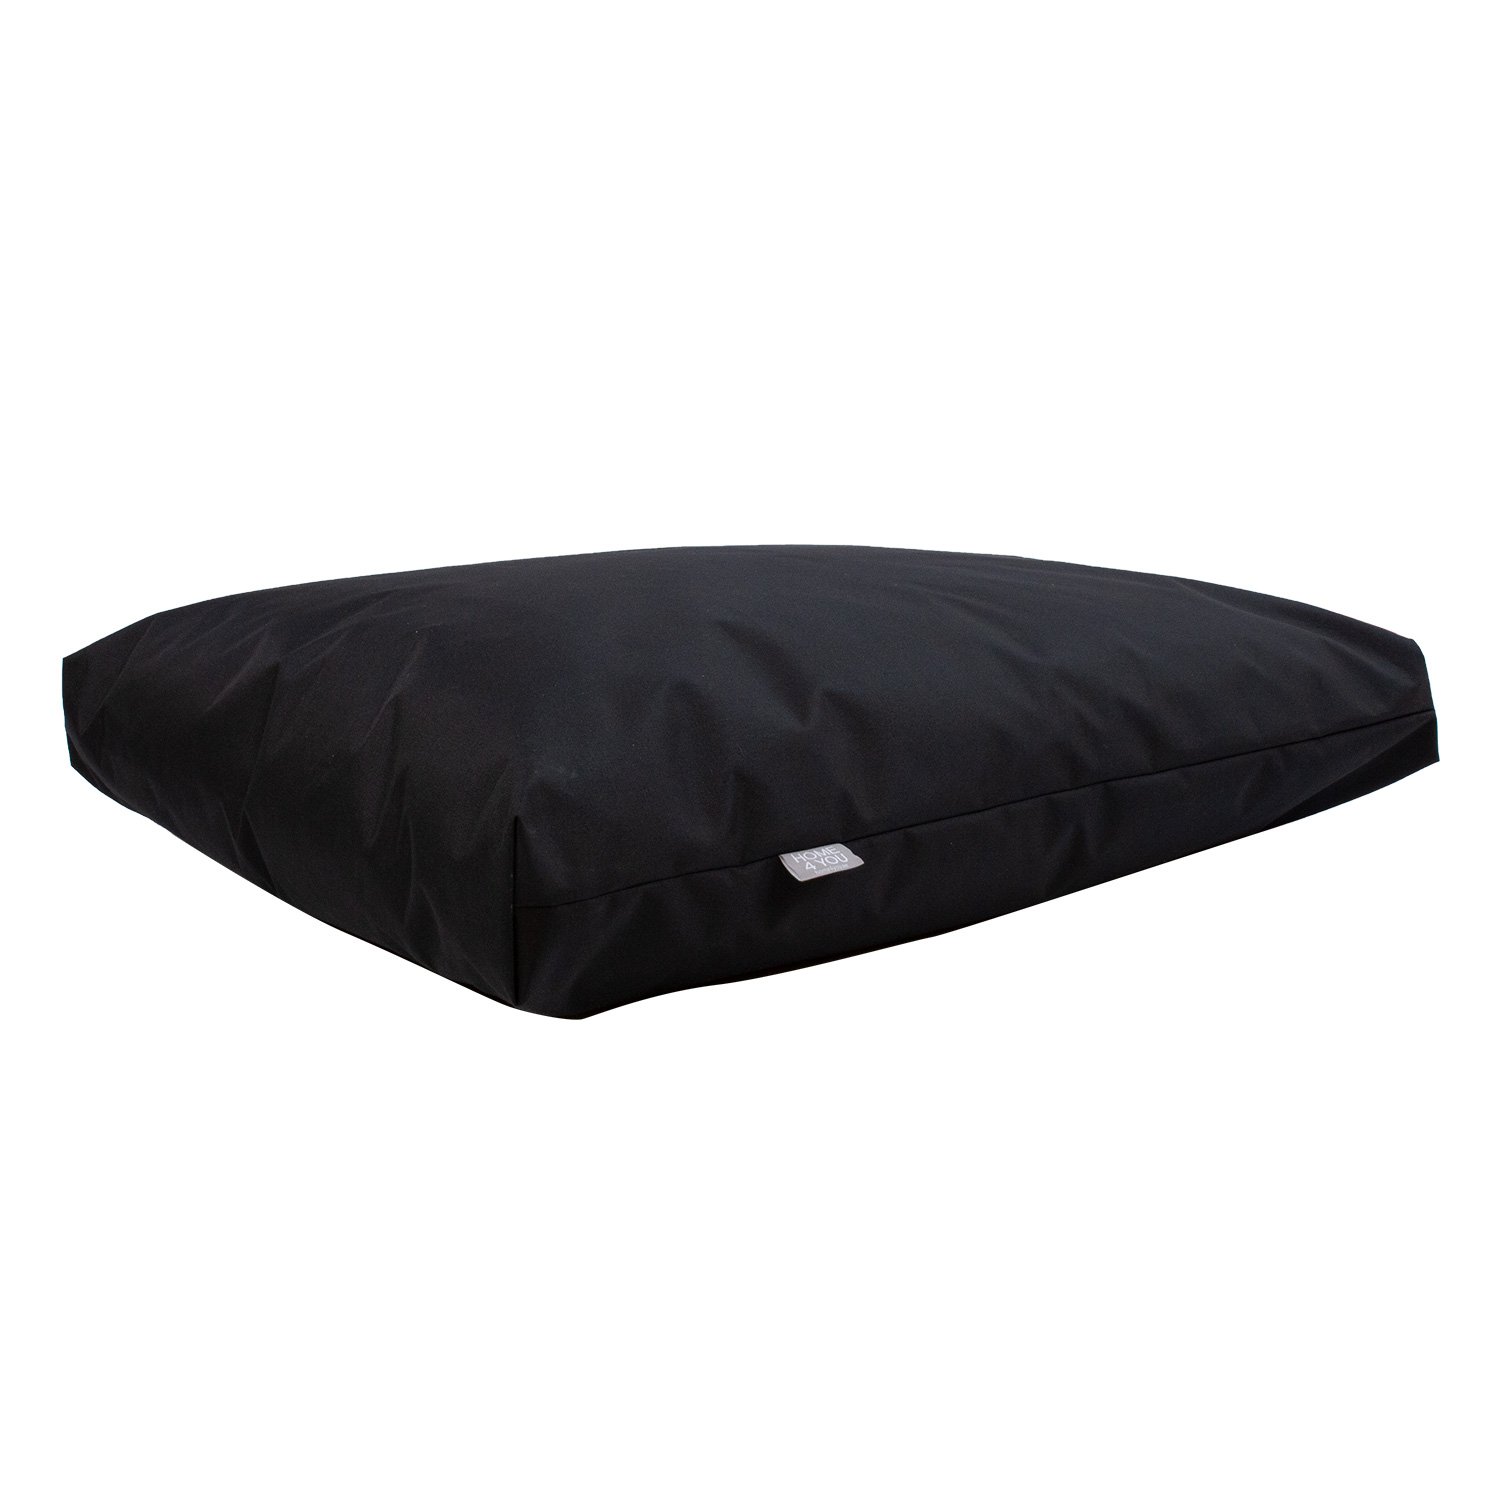 Grindų pagalvė MR. BIG 60x80xH16 cm, juoda